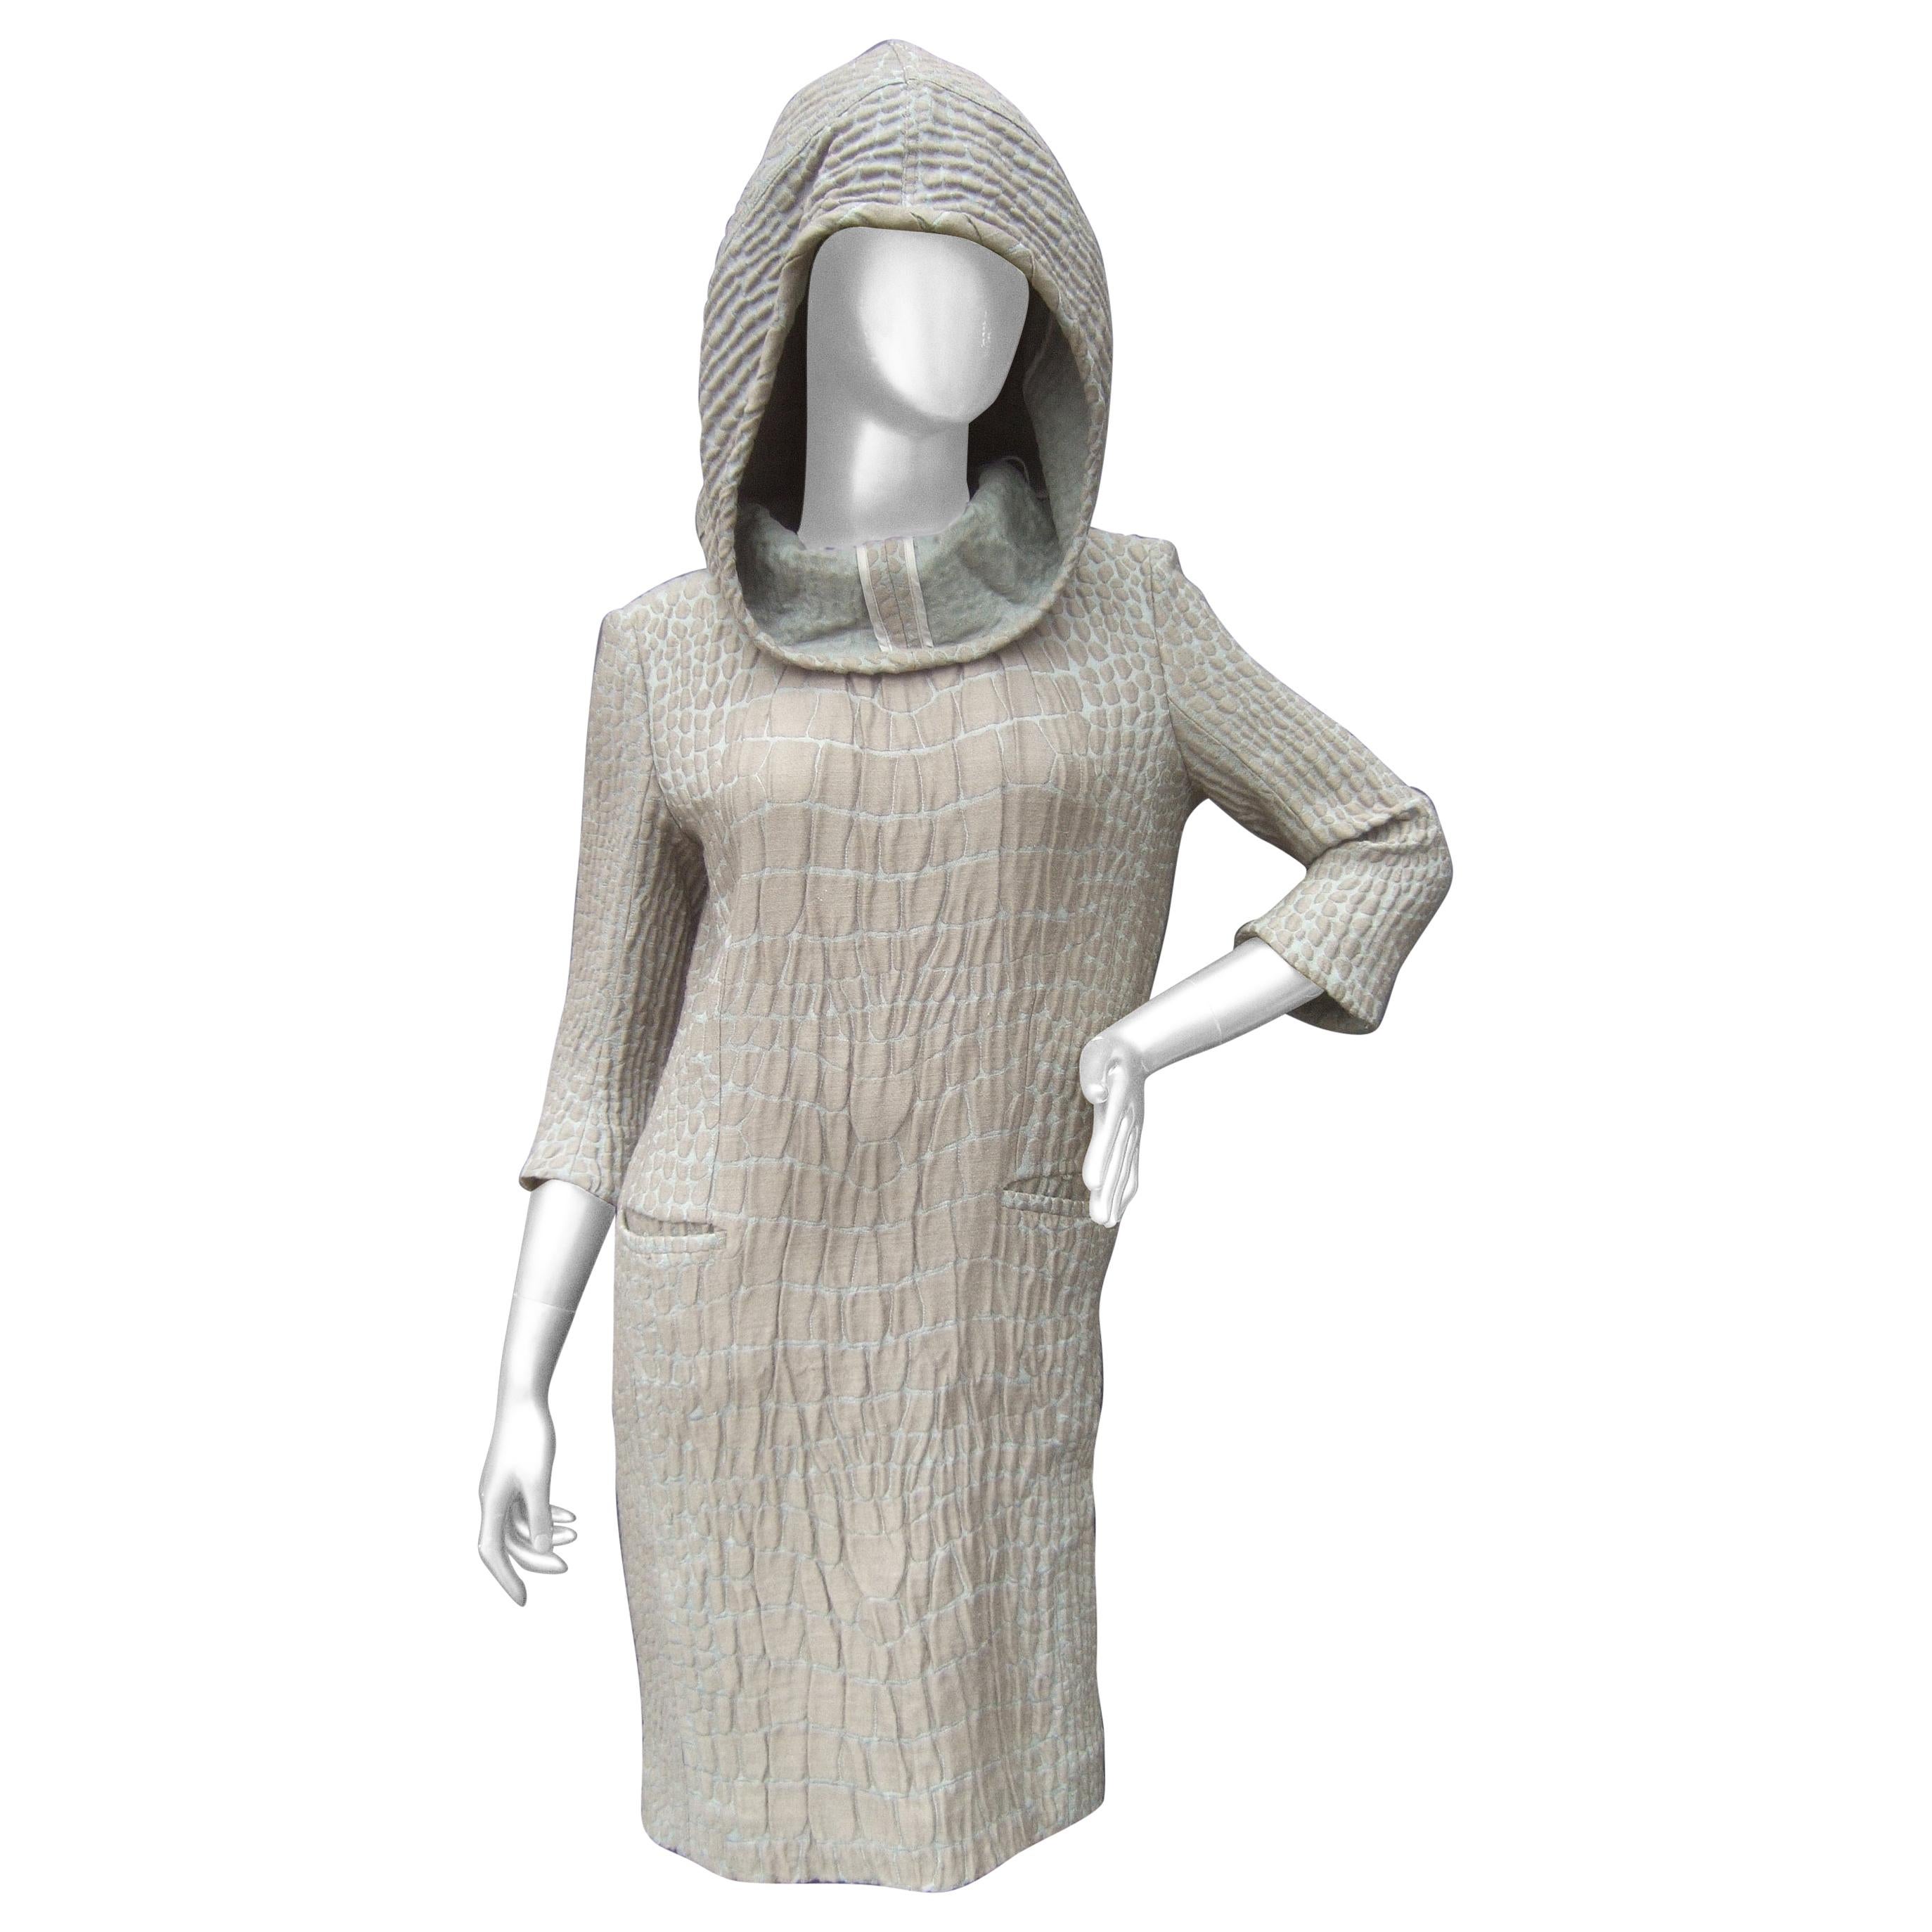 Yves Saint Laurent Rive Gauche Avant-Garde Hooded Dress c 21st C